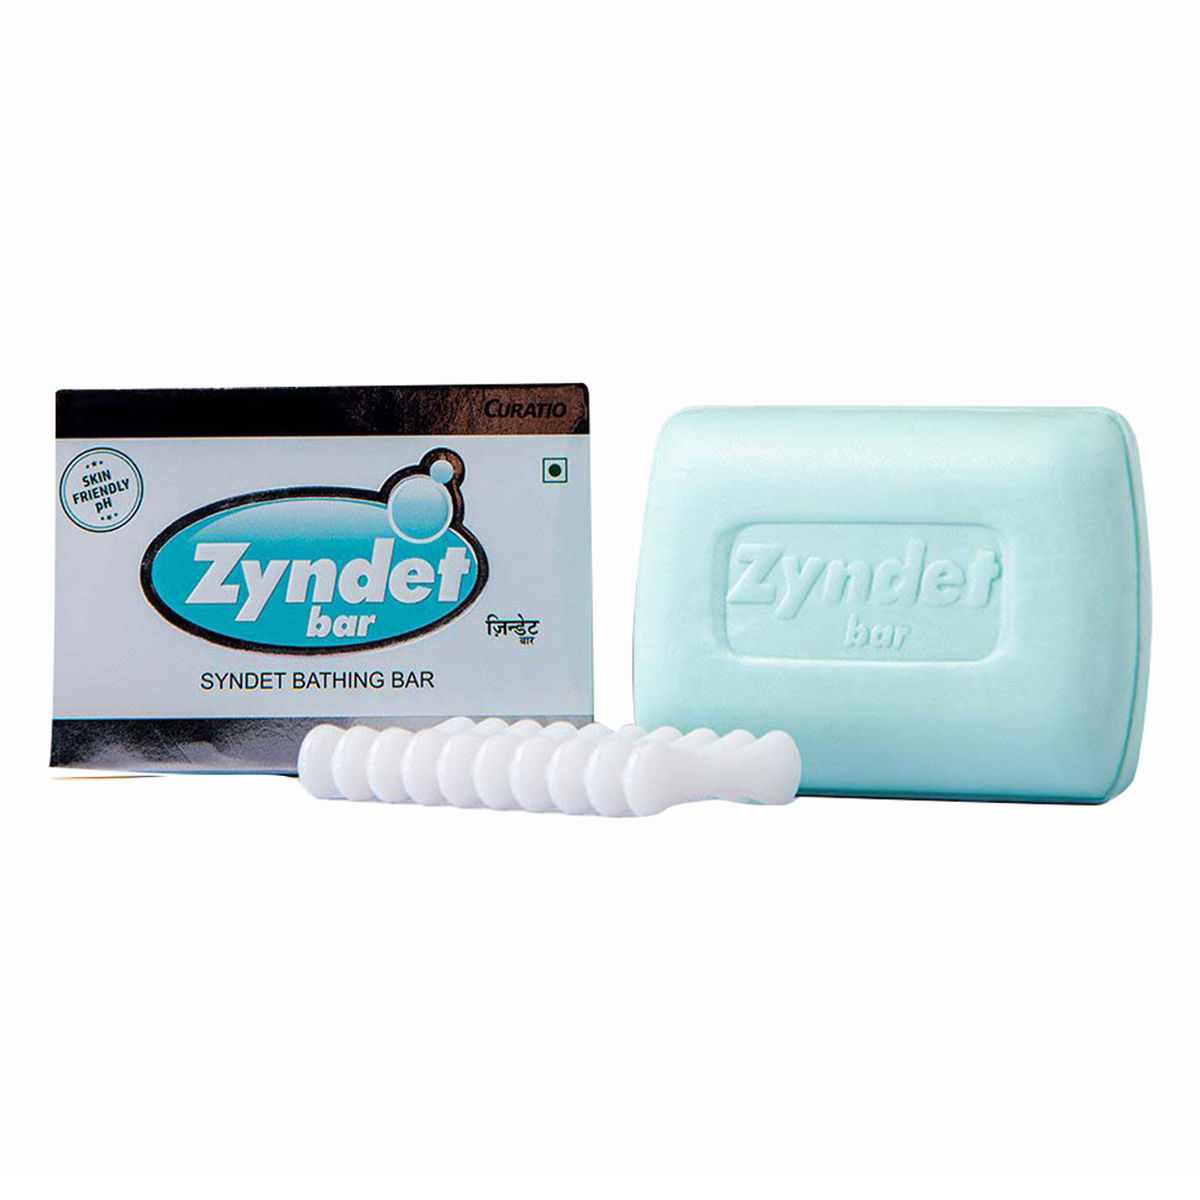 Buy Zyndet Bar, 100 gm Online